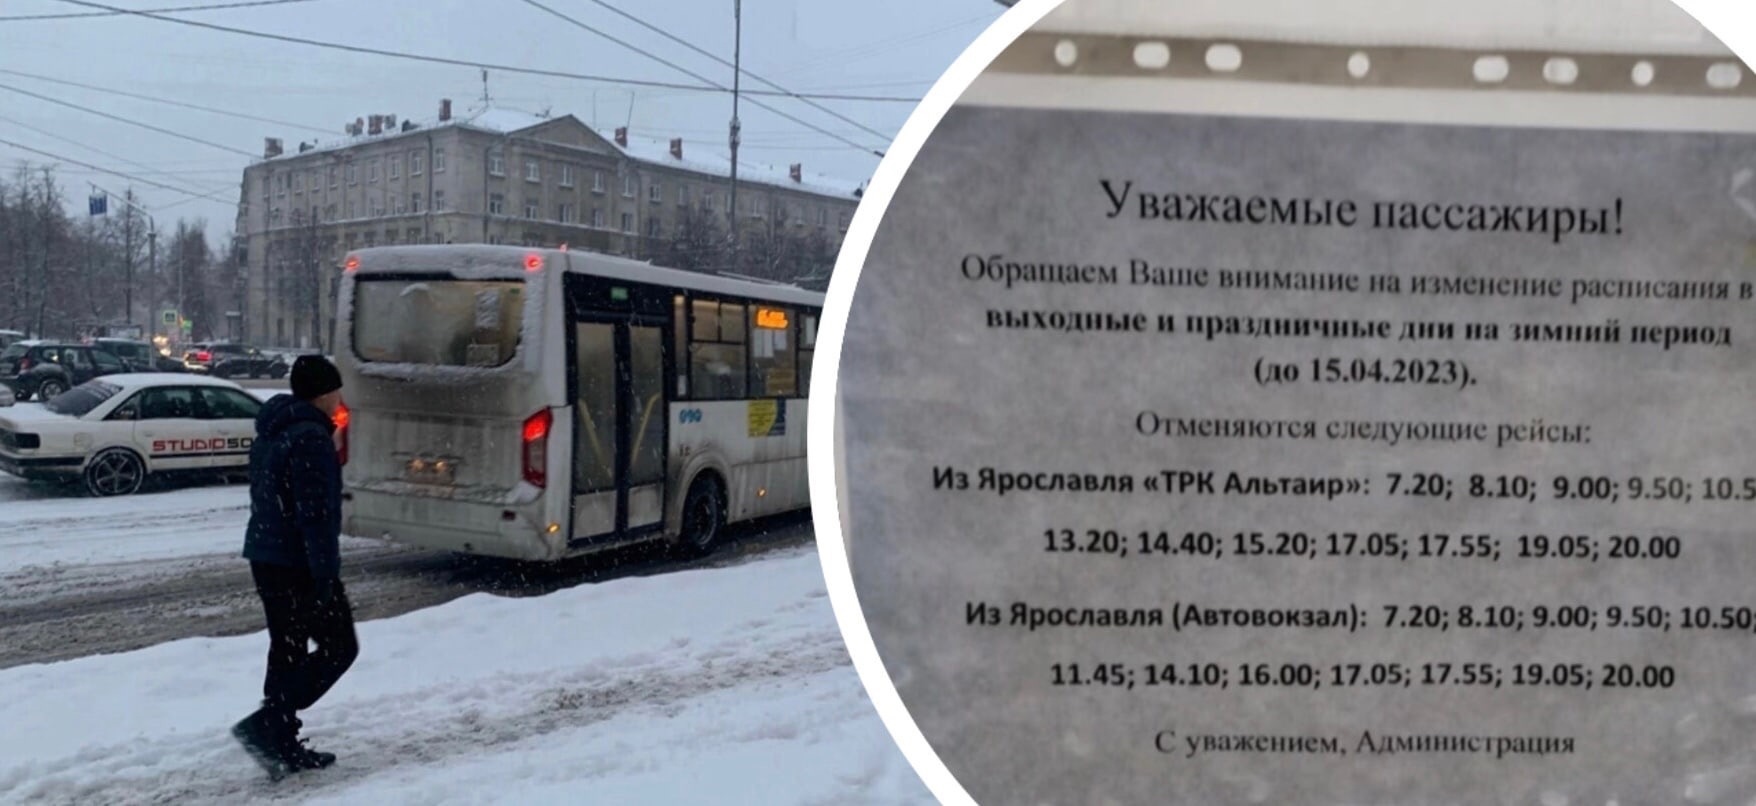 "Недолго радовались": в Ярославле отменили больше 20 автобусных рейсов до середины апреля